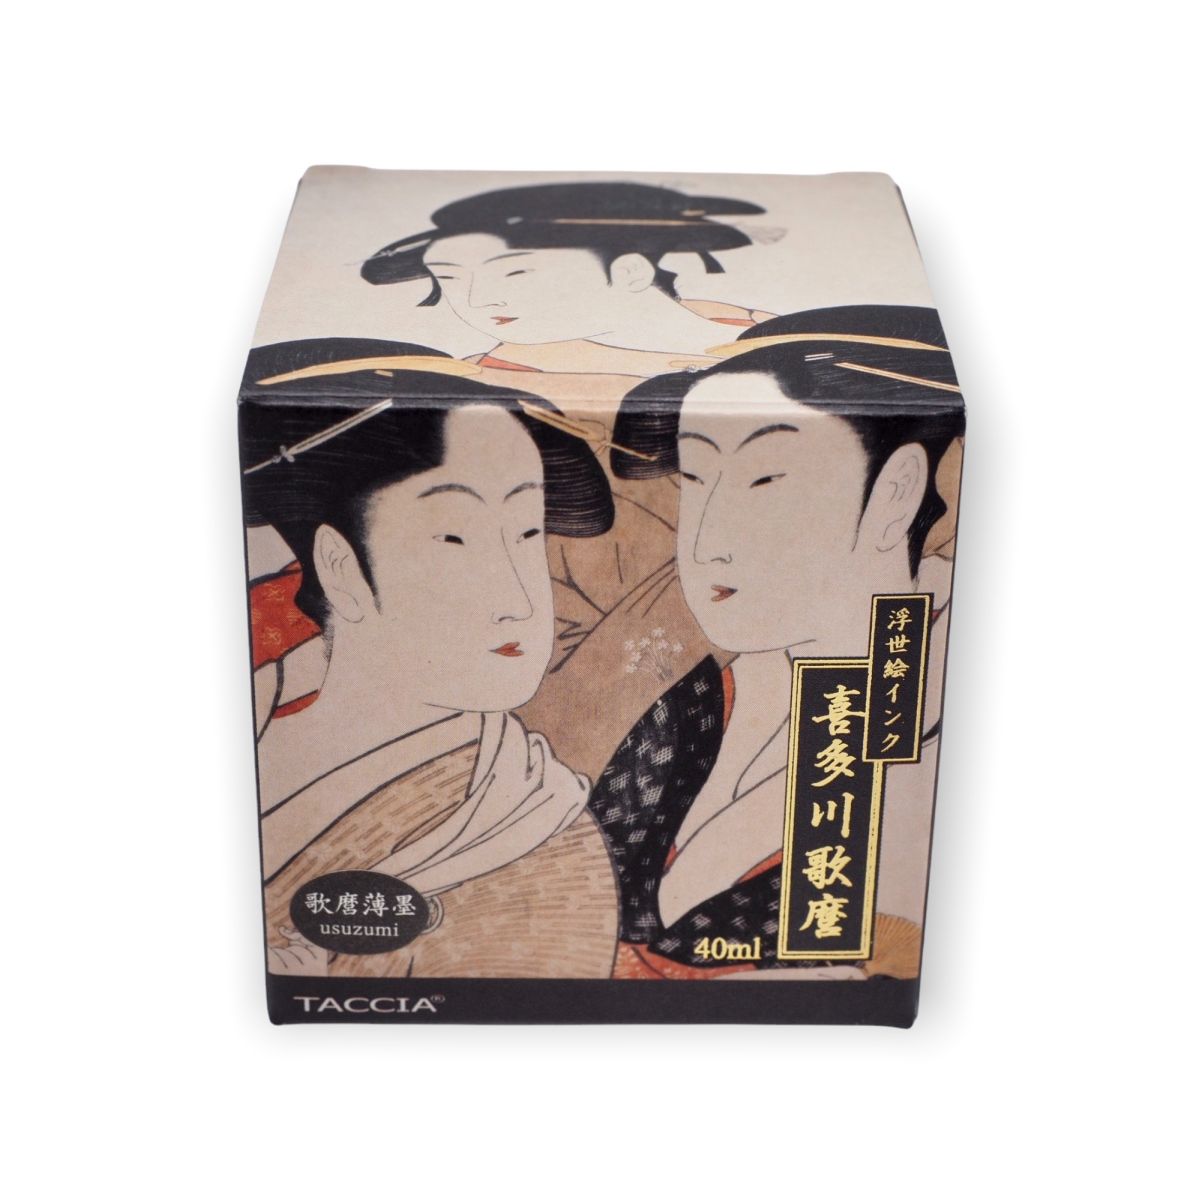 Taccia Tinte Utamaro - Usuzumi